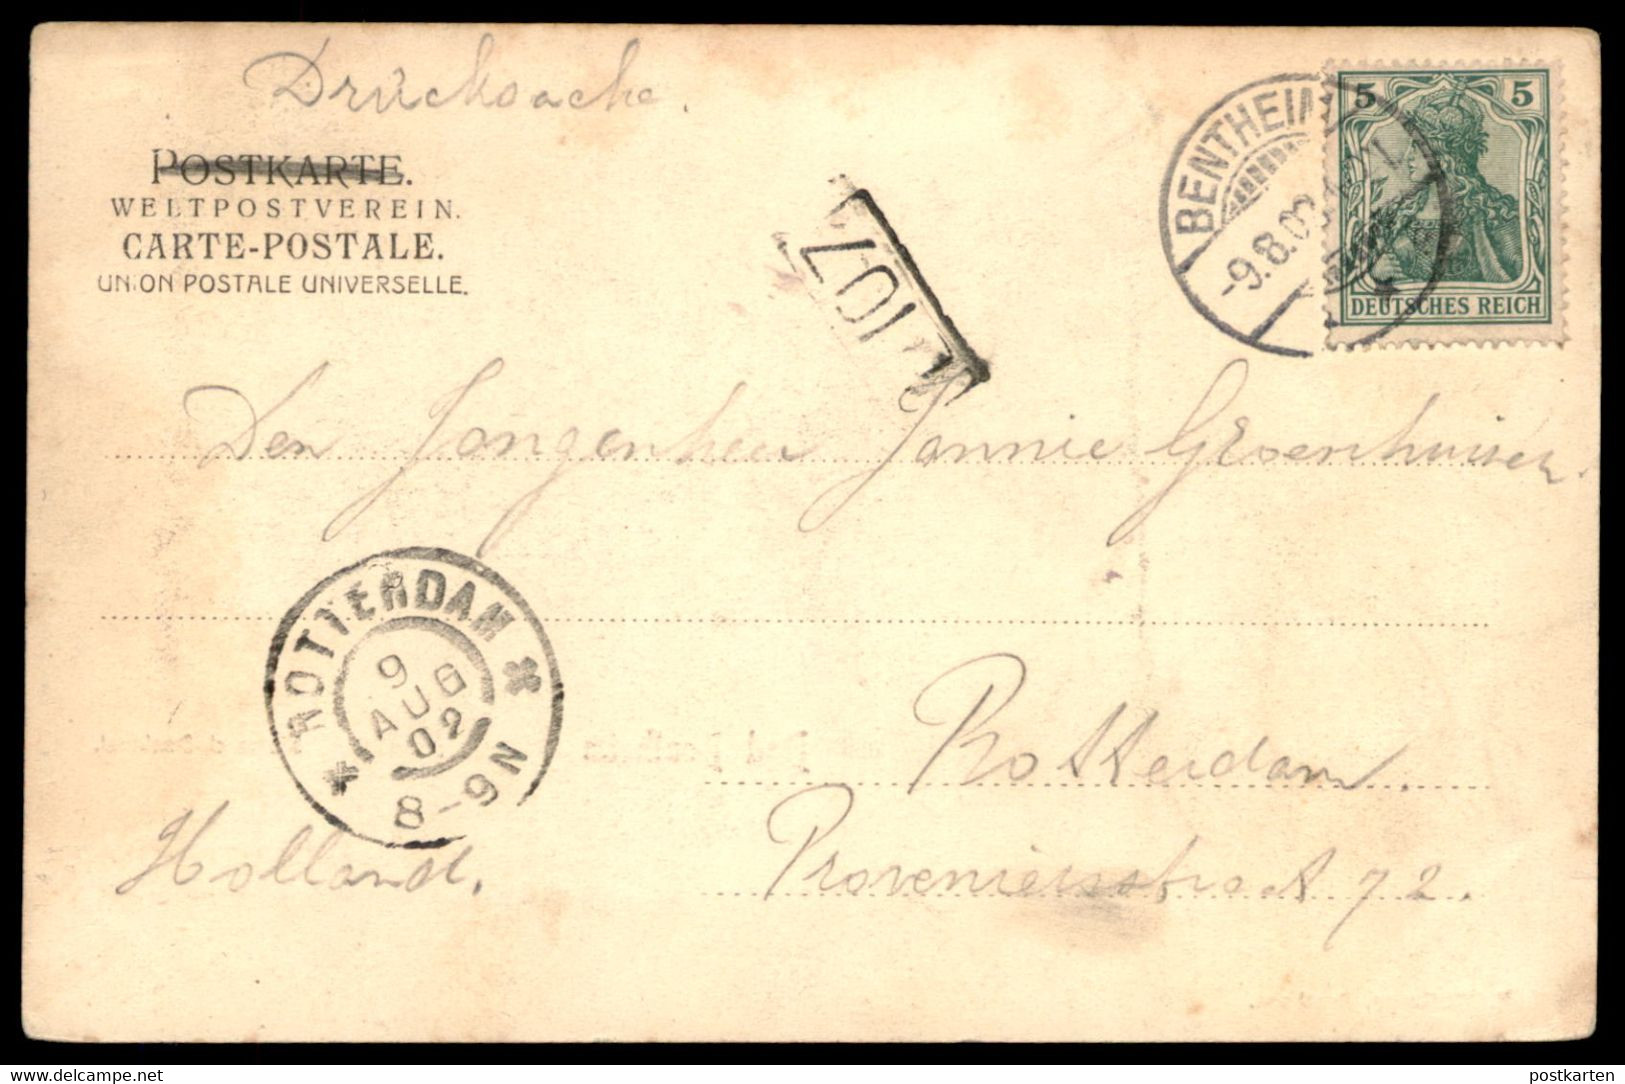 ALTE POSTKARTE BAD BENTHEIM 1902 BISMARCK-DENKMAL BISMARCKHALLE RESTAURATION Bismarckdenkmal Cpa Postcard Ansichtskarte - Bad Bentheim